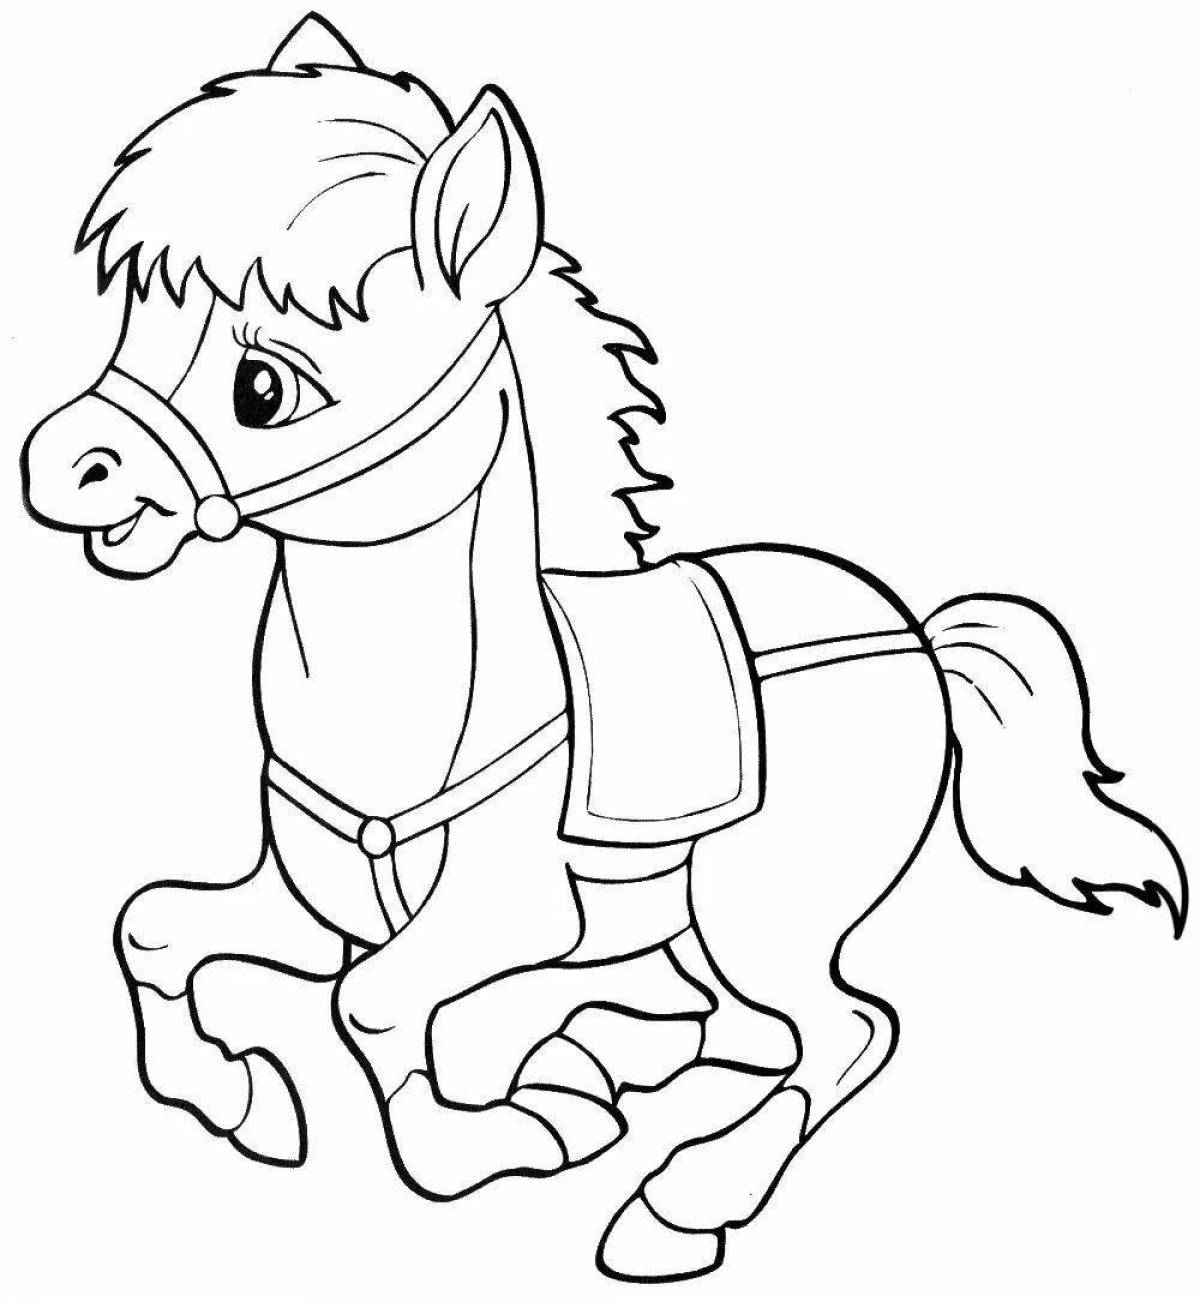 Игривая ахалтекинская раскраска лошадь для детей